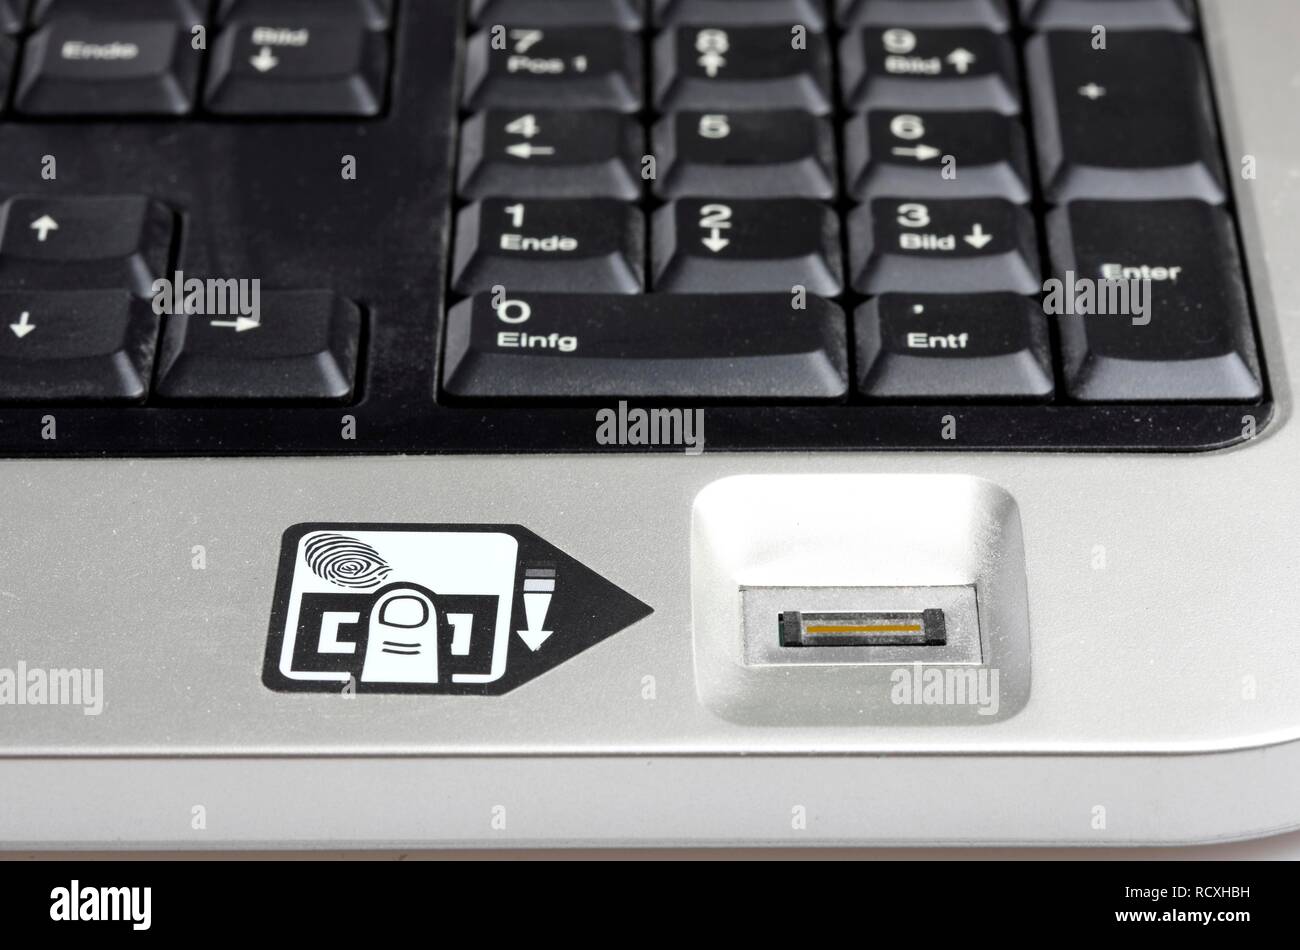 Clavier de l'ordinateur avec un lecteur d'empreintes digitales, seuls les utilisateurs enregistrés peuvent utiliser l'ordinateur après leurs empreintes digitales identifie Banque D'Images